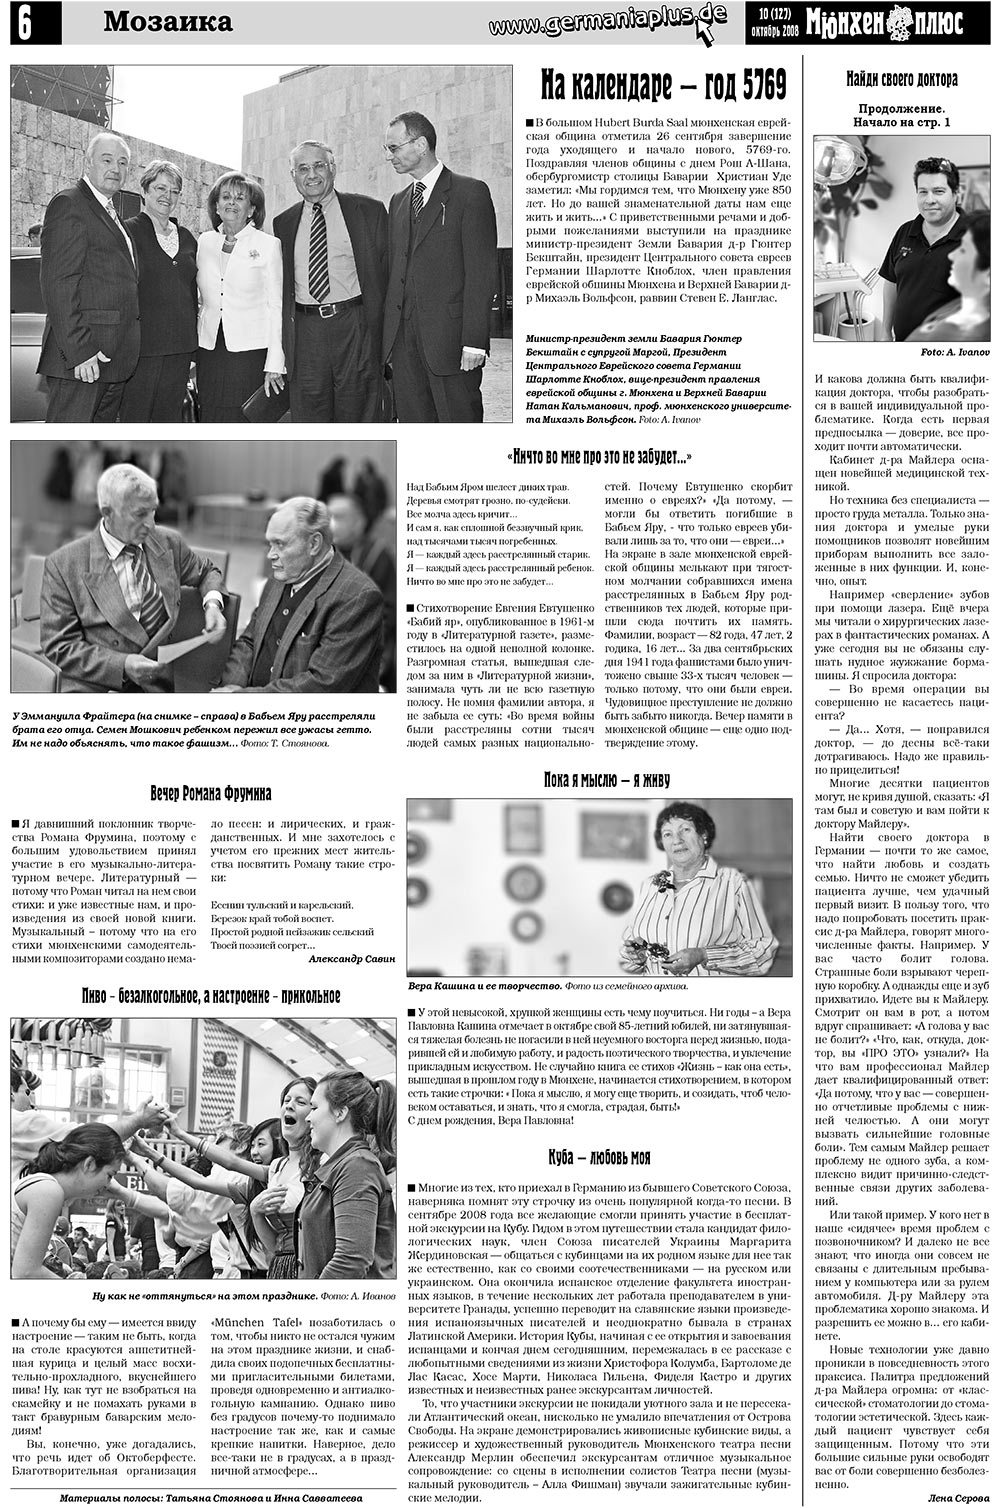 Германия плюс (газета). 2008 год, номер 10, стр. 10